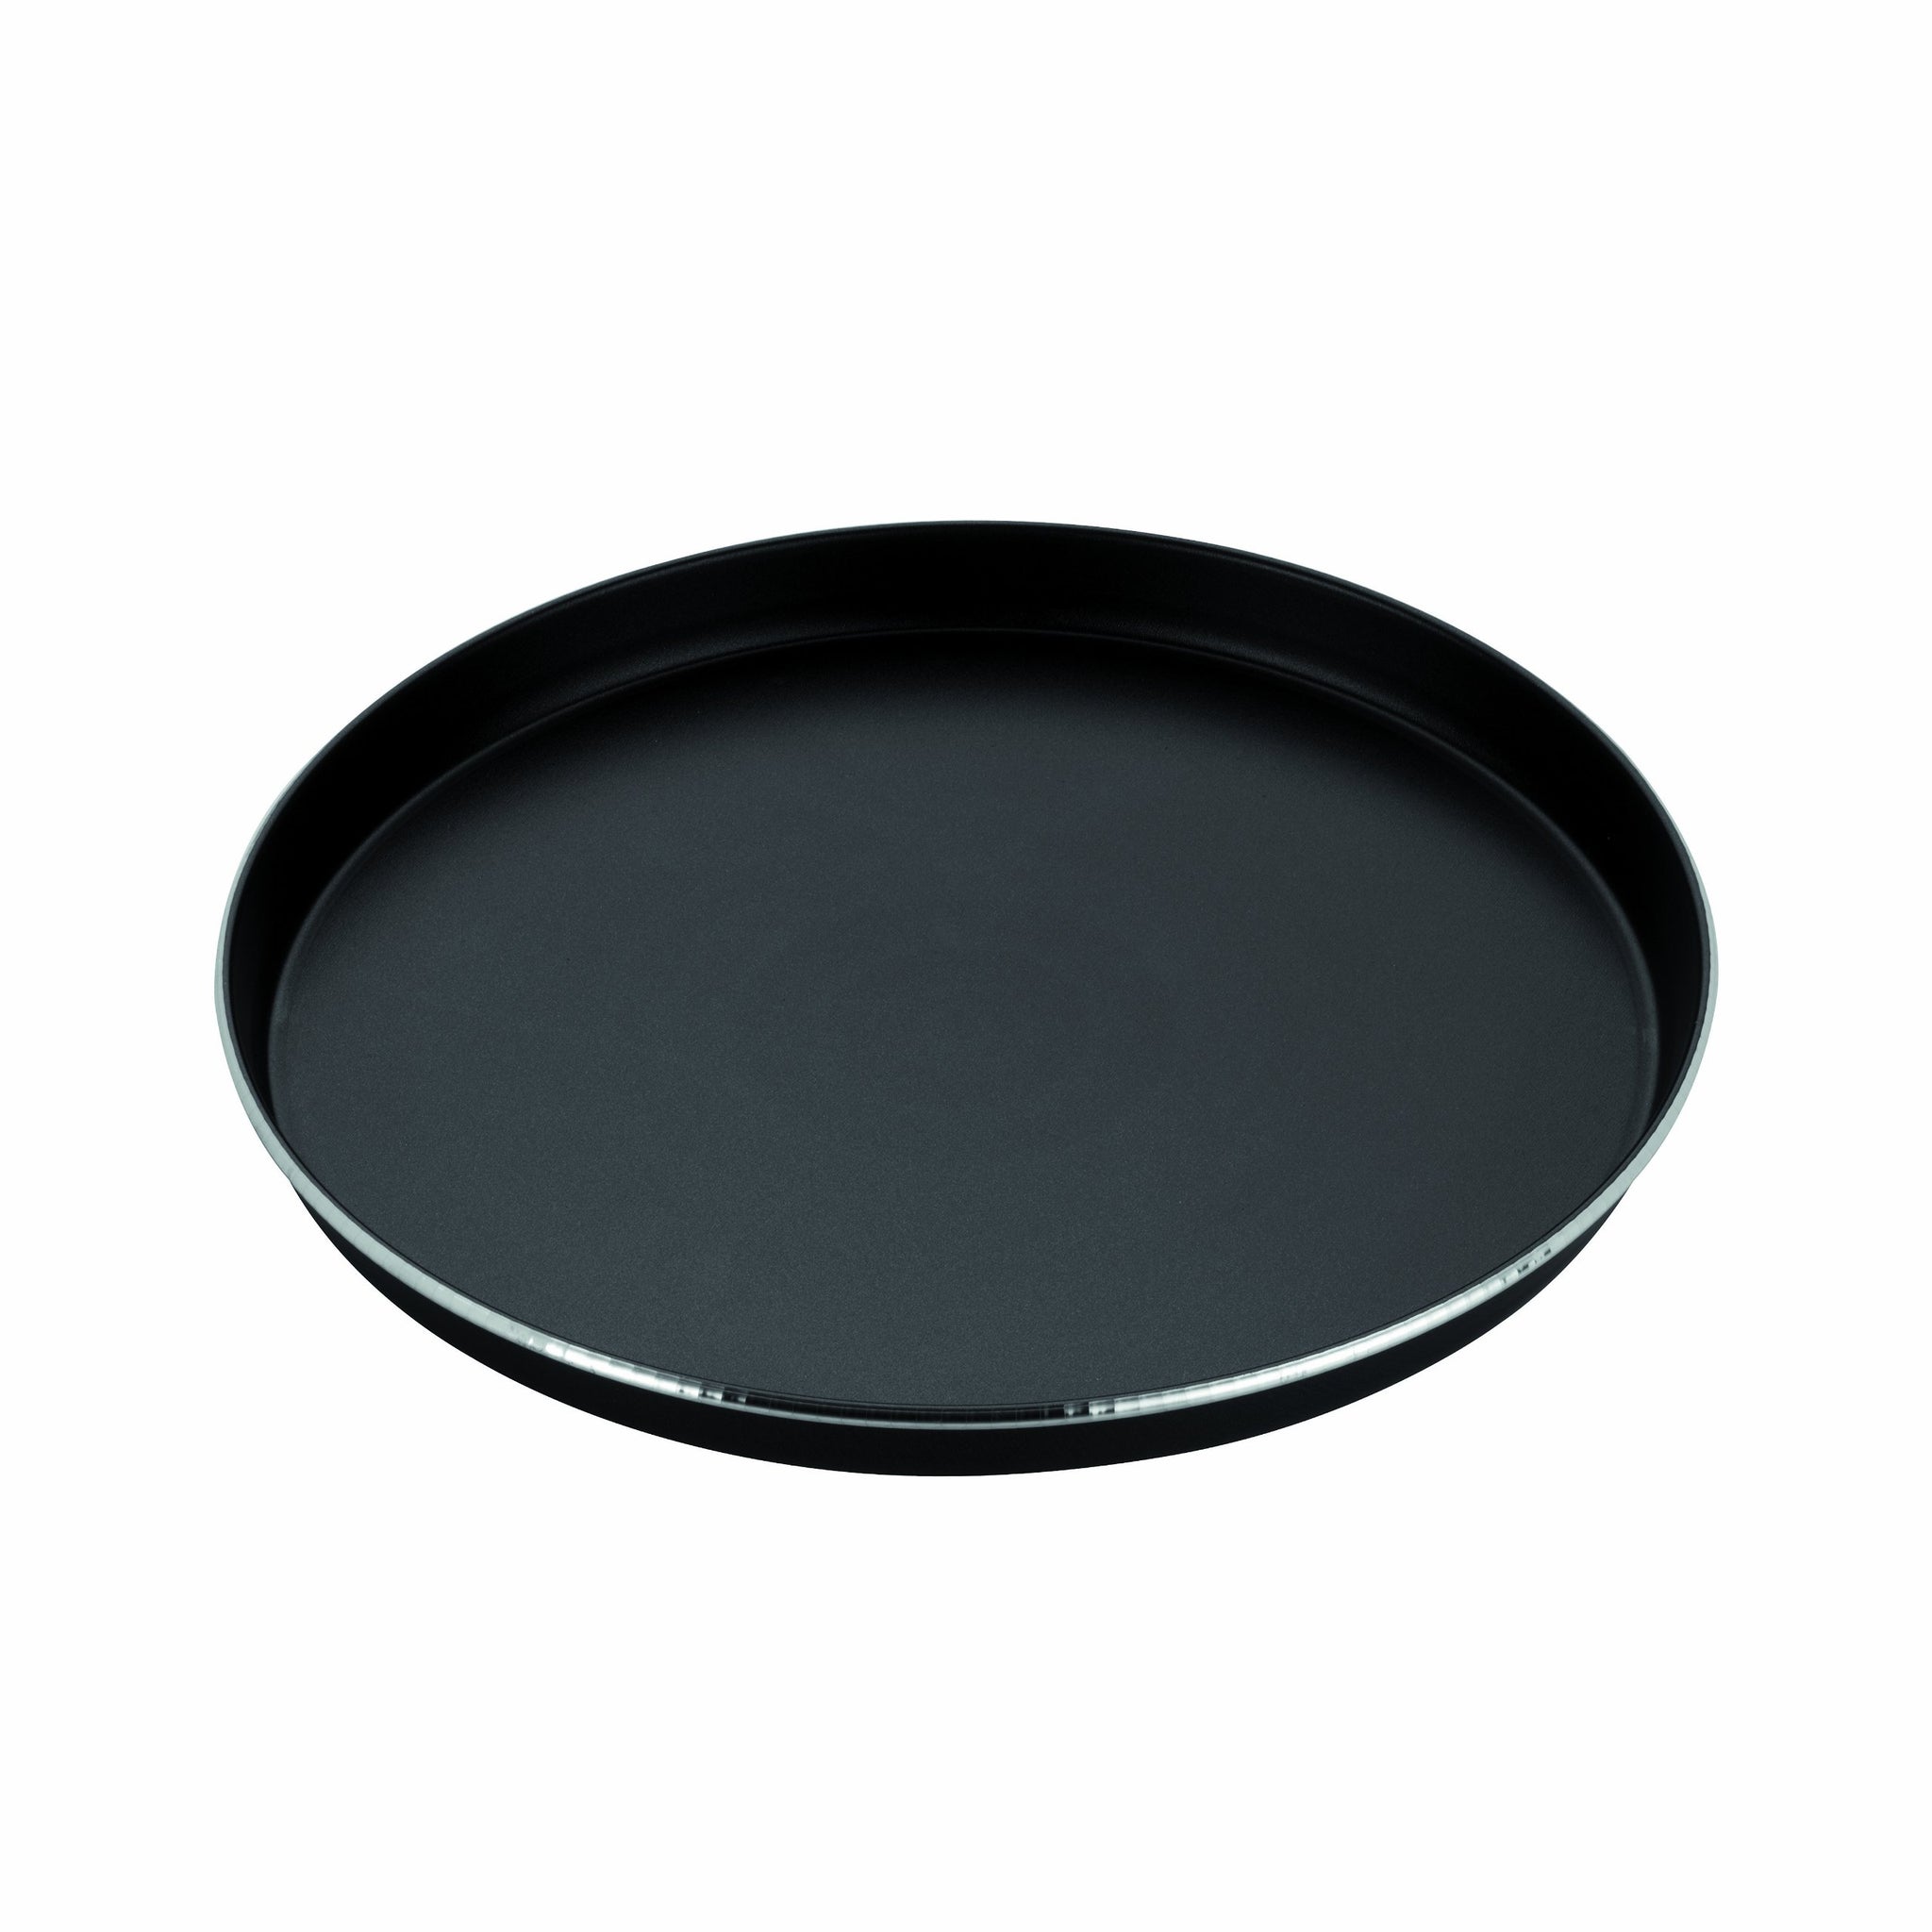 Whirlpool AVM305 Piatto Crisp grande per forno a microonde Black